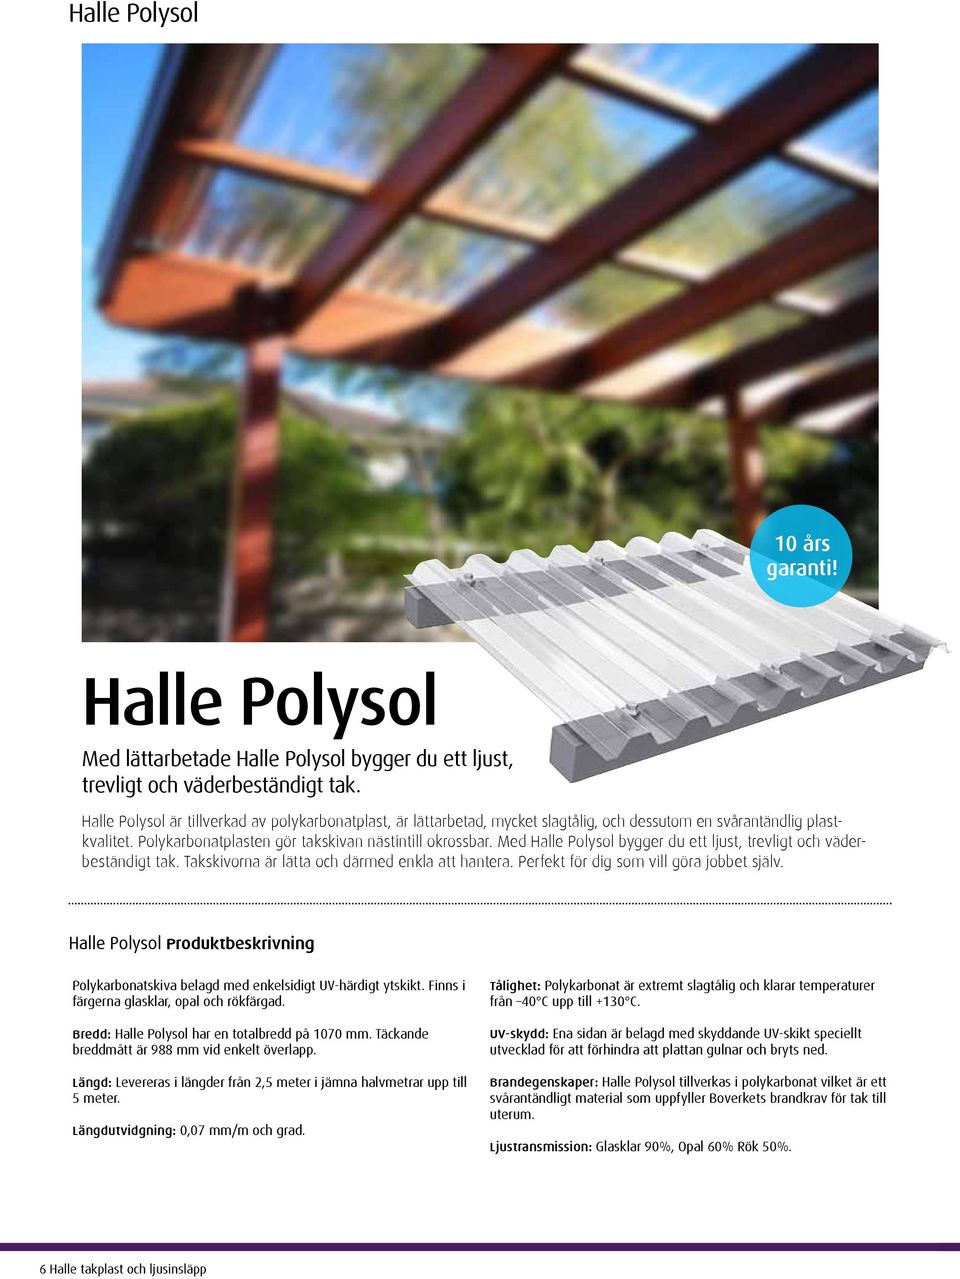 Med Halle Polysol bygger du ett ljust, trevligt och väderbeständigt tak. Takskivorna är lätta och därmed enkla att hantera. Perfekt för dig som vill göra jobbet själv.